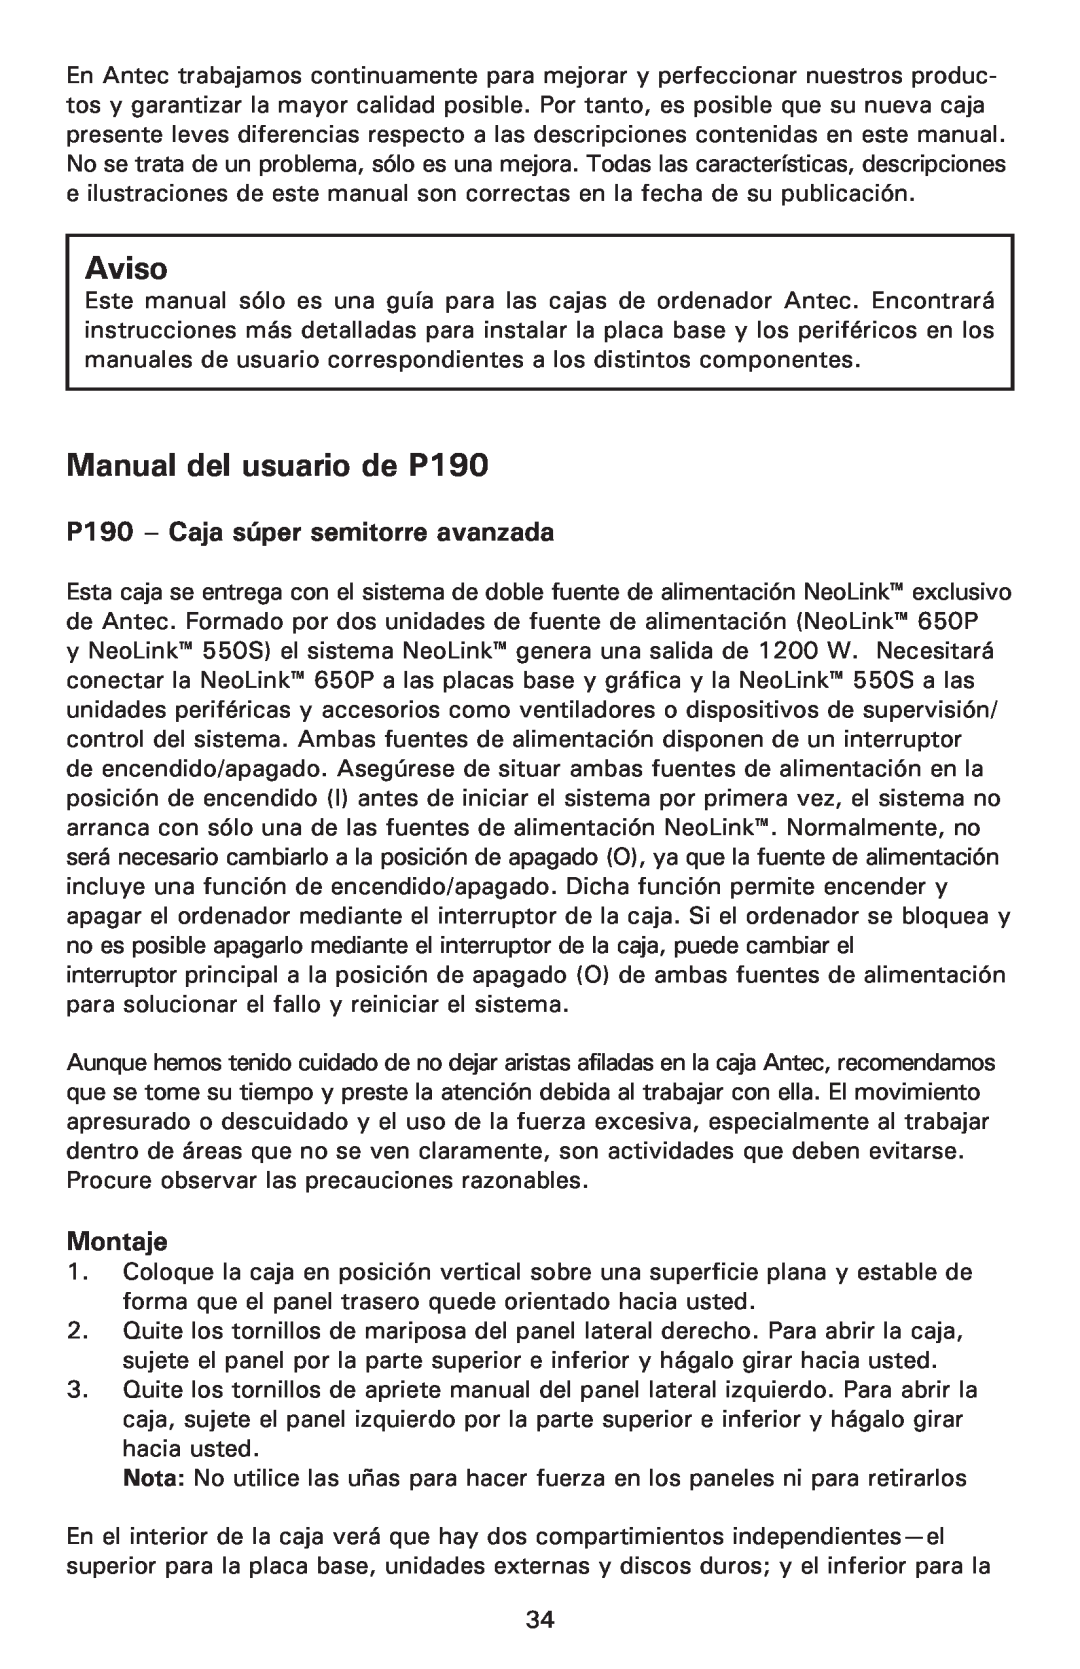 Antec user manual P190 - Caja súper semitorre avanzada, Montaje, Aviso, Manual del usuario de P190 